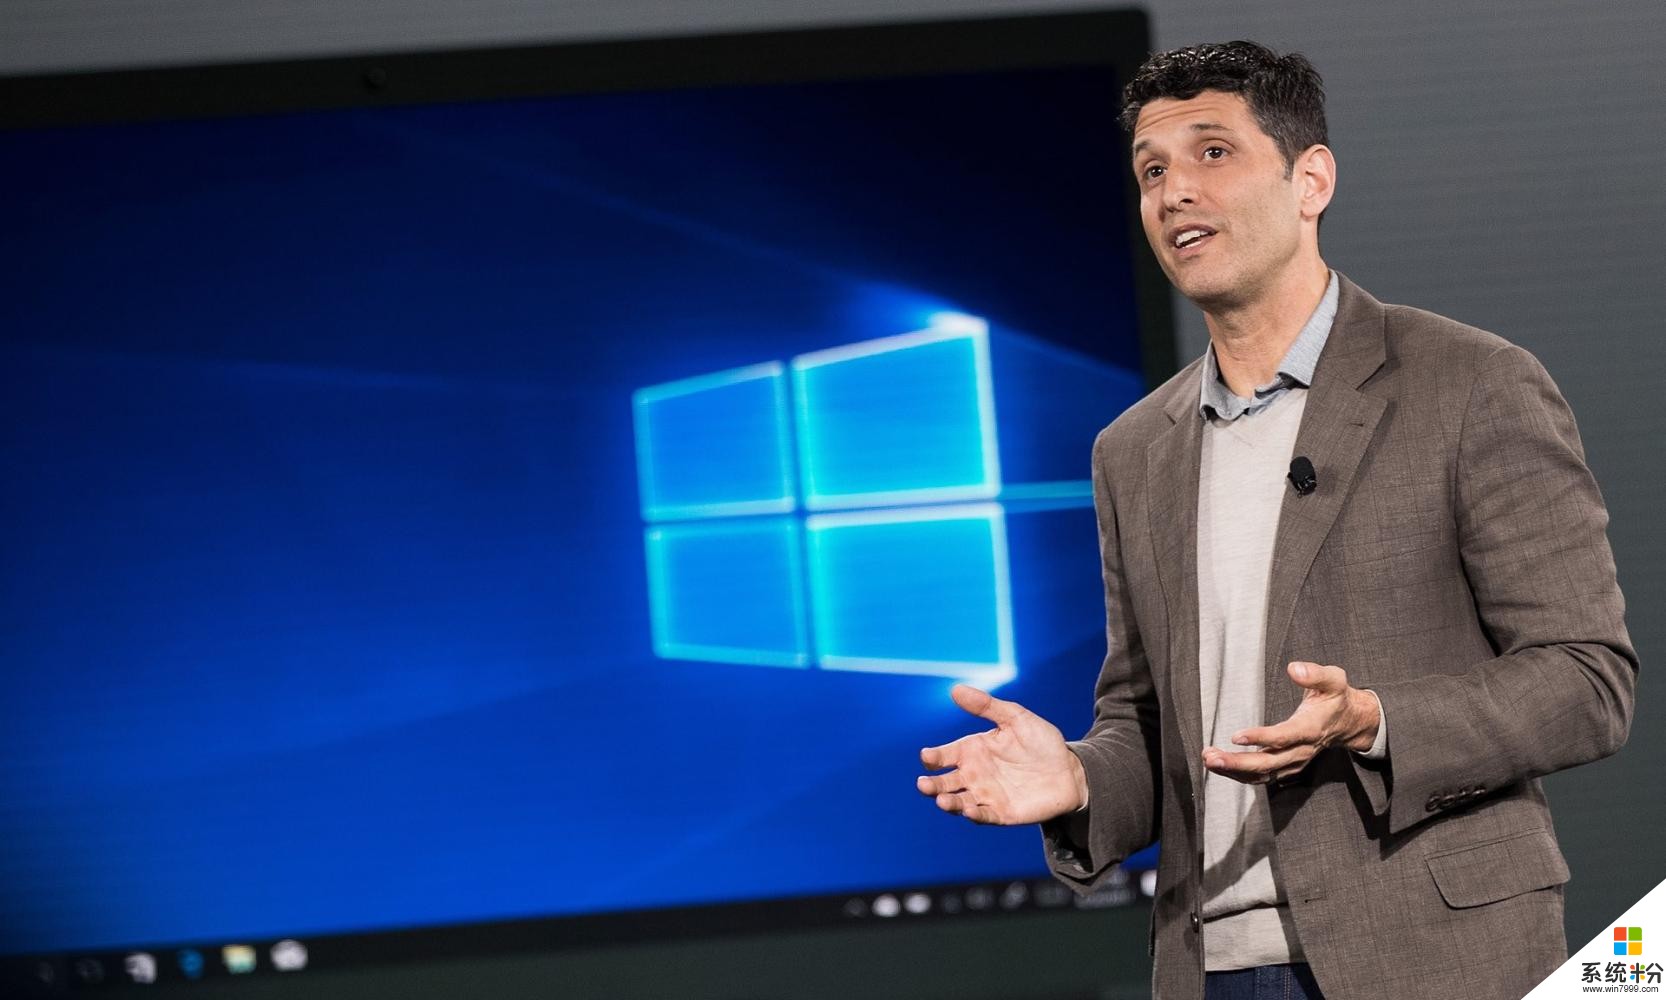 微軟推出Surface筆記本電腦和Windows 10 S, 以競爭MacBook Pro(3)